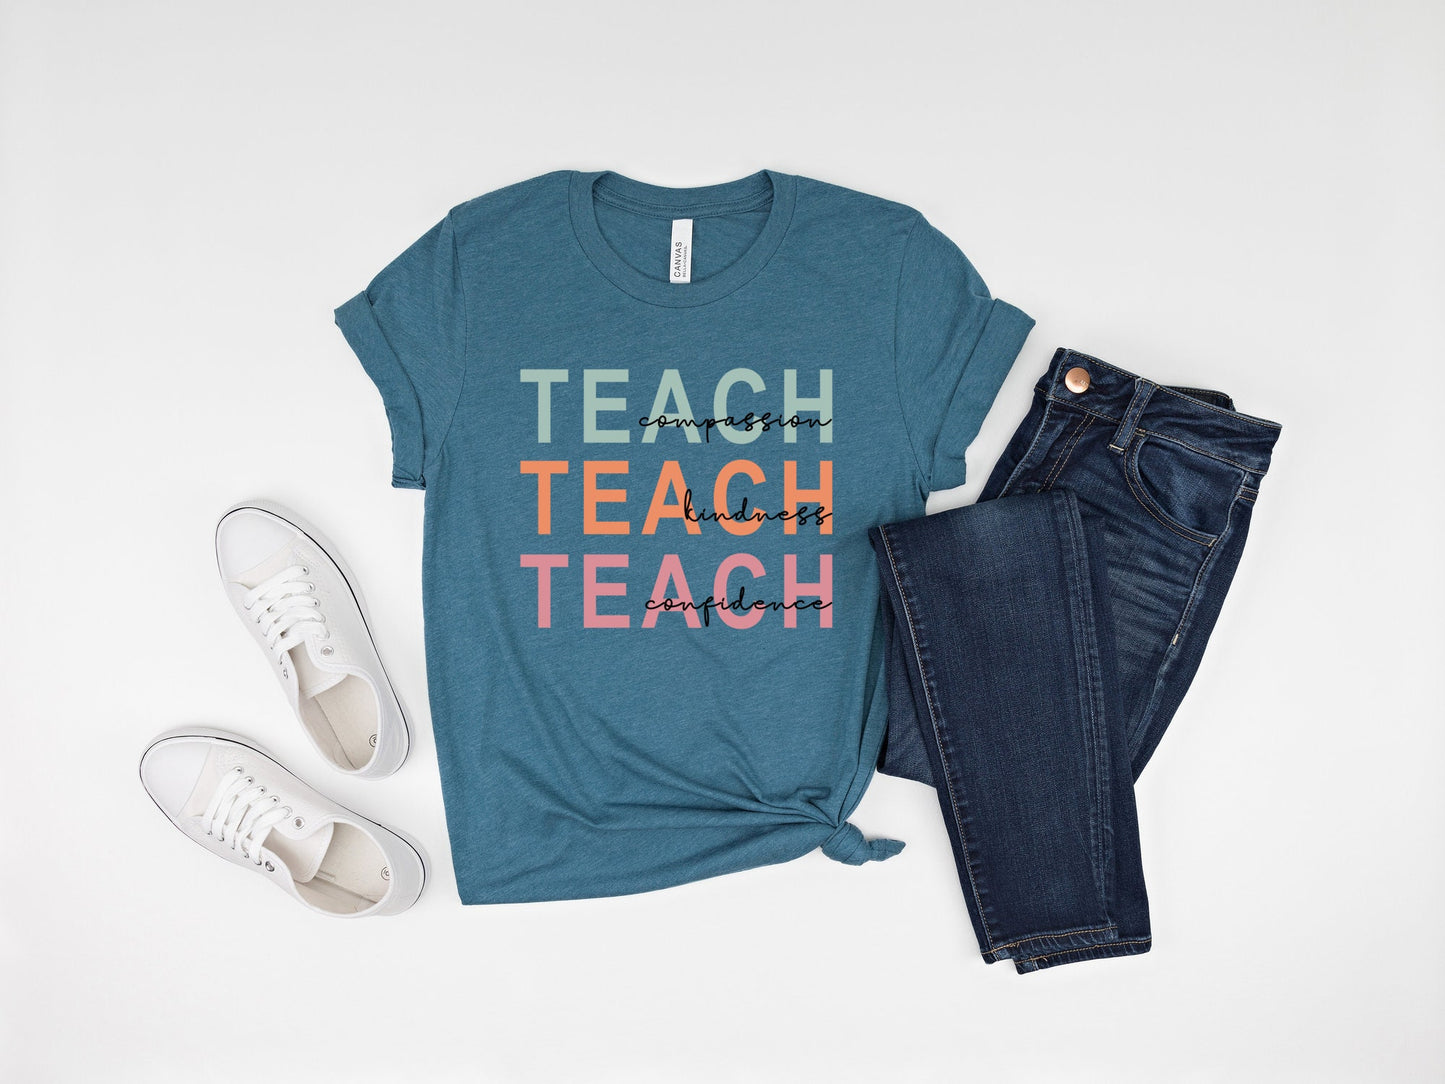 Teach Compassion Kindness Confidence Shirt, Teacher Shirt, Back to School Shirt, Teach Love Inspire Shirt, Inspirational Teacher Shirt